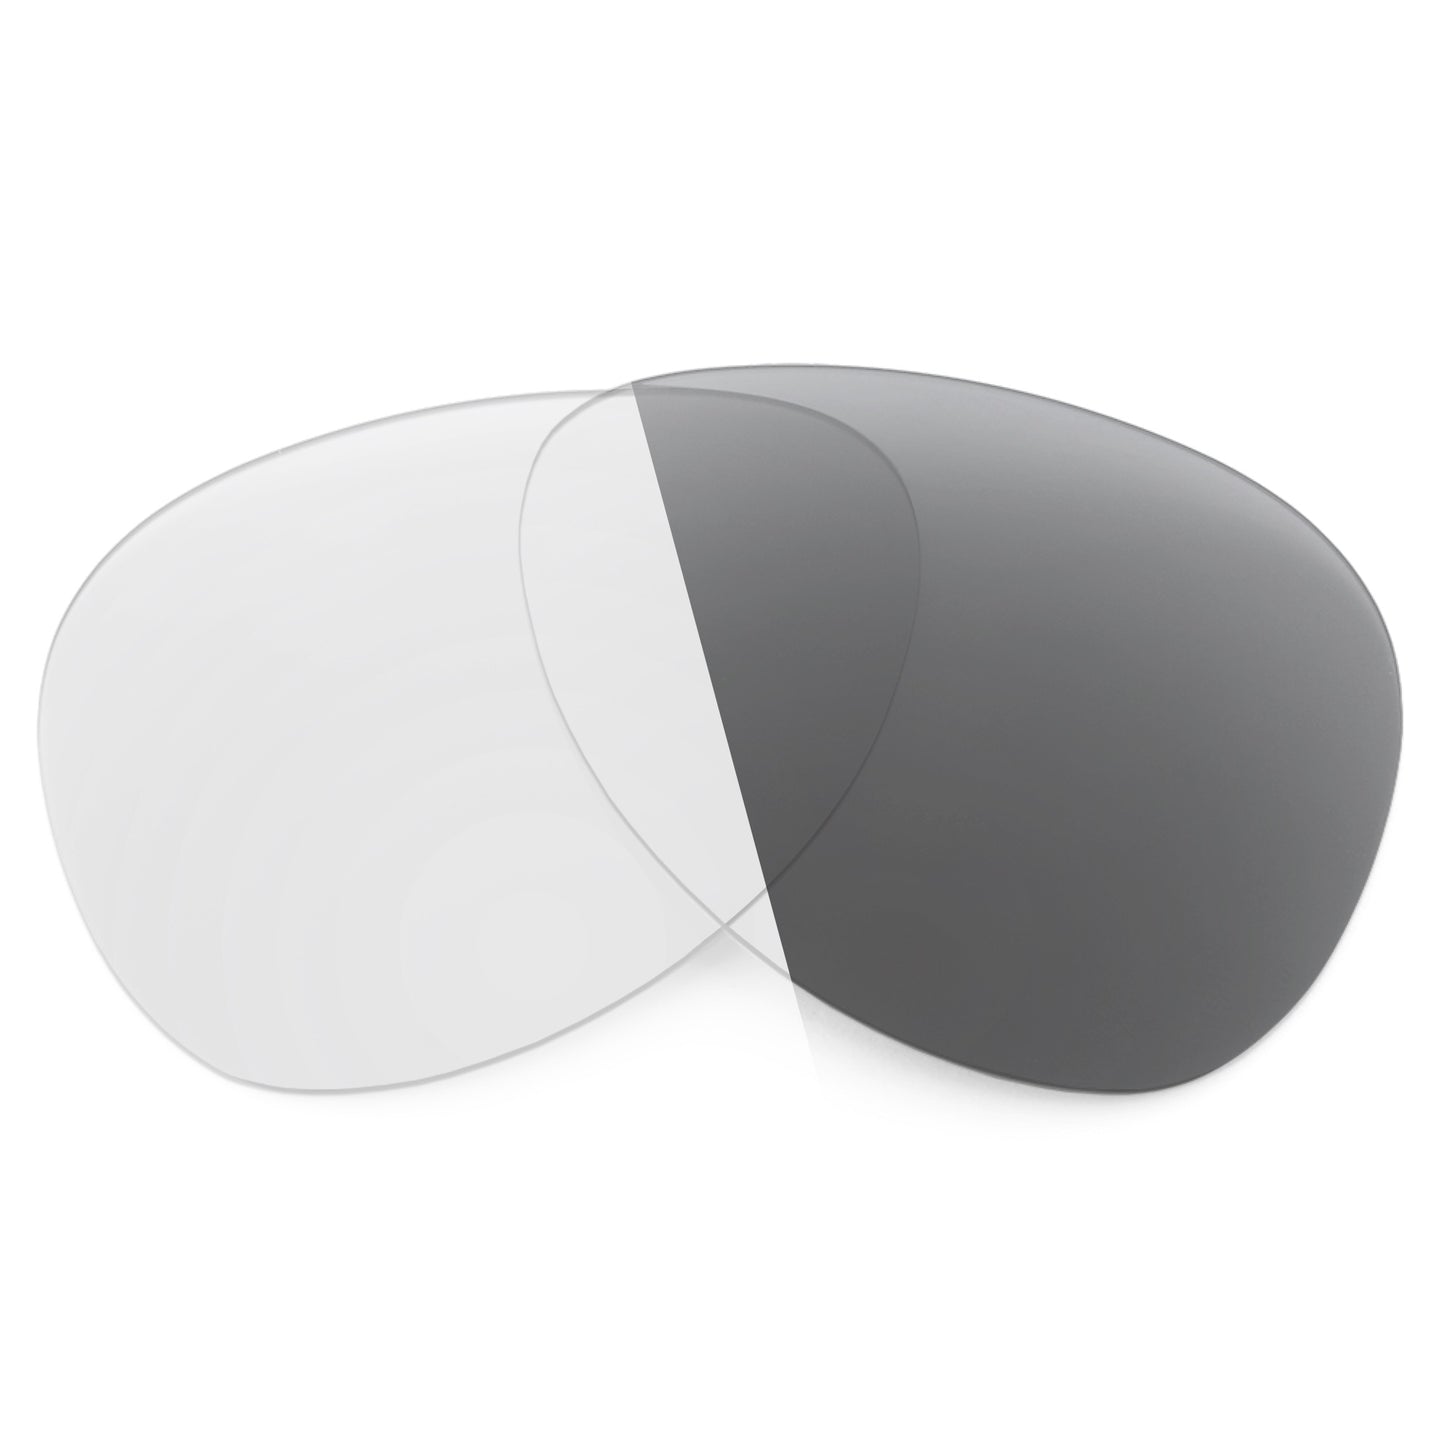 Revant replacement lenses for Maui Jim Honomanu MJ260 Non-Polarized Adapt Gray Photochromic